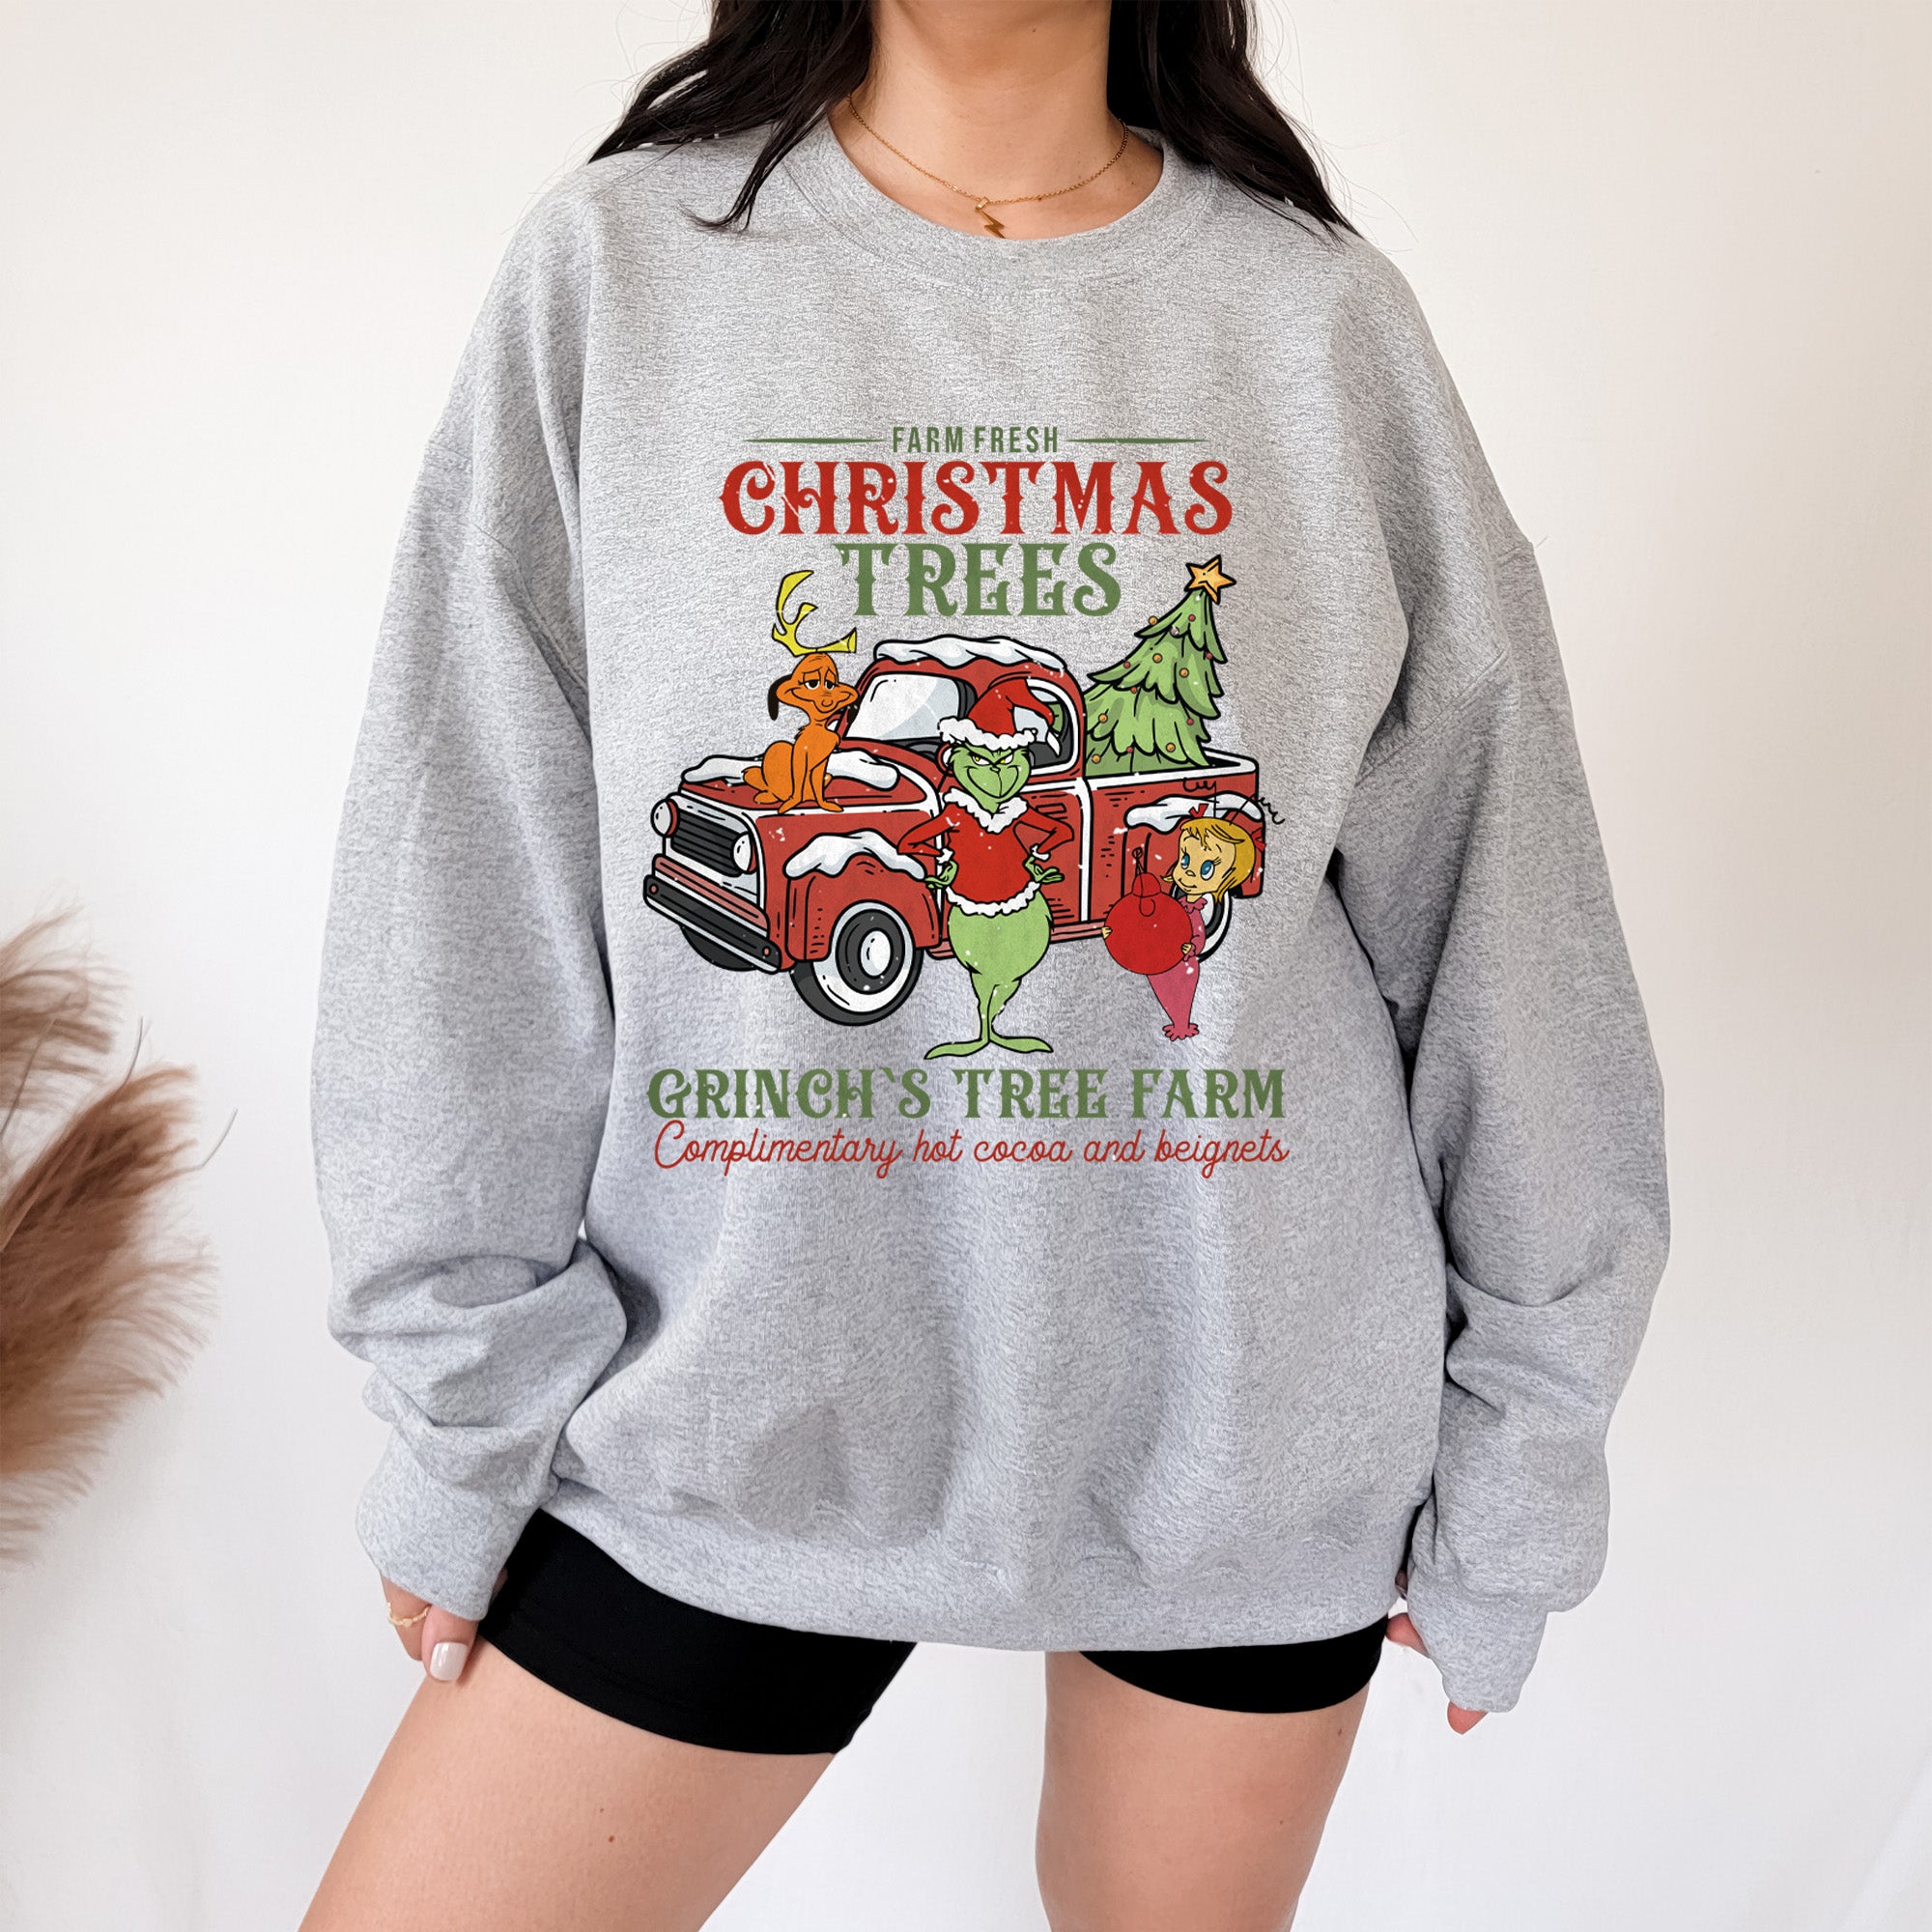 Mystery Grinch Sweatshirt and 20oz Tumbler Bundle - Christmas Bundle